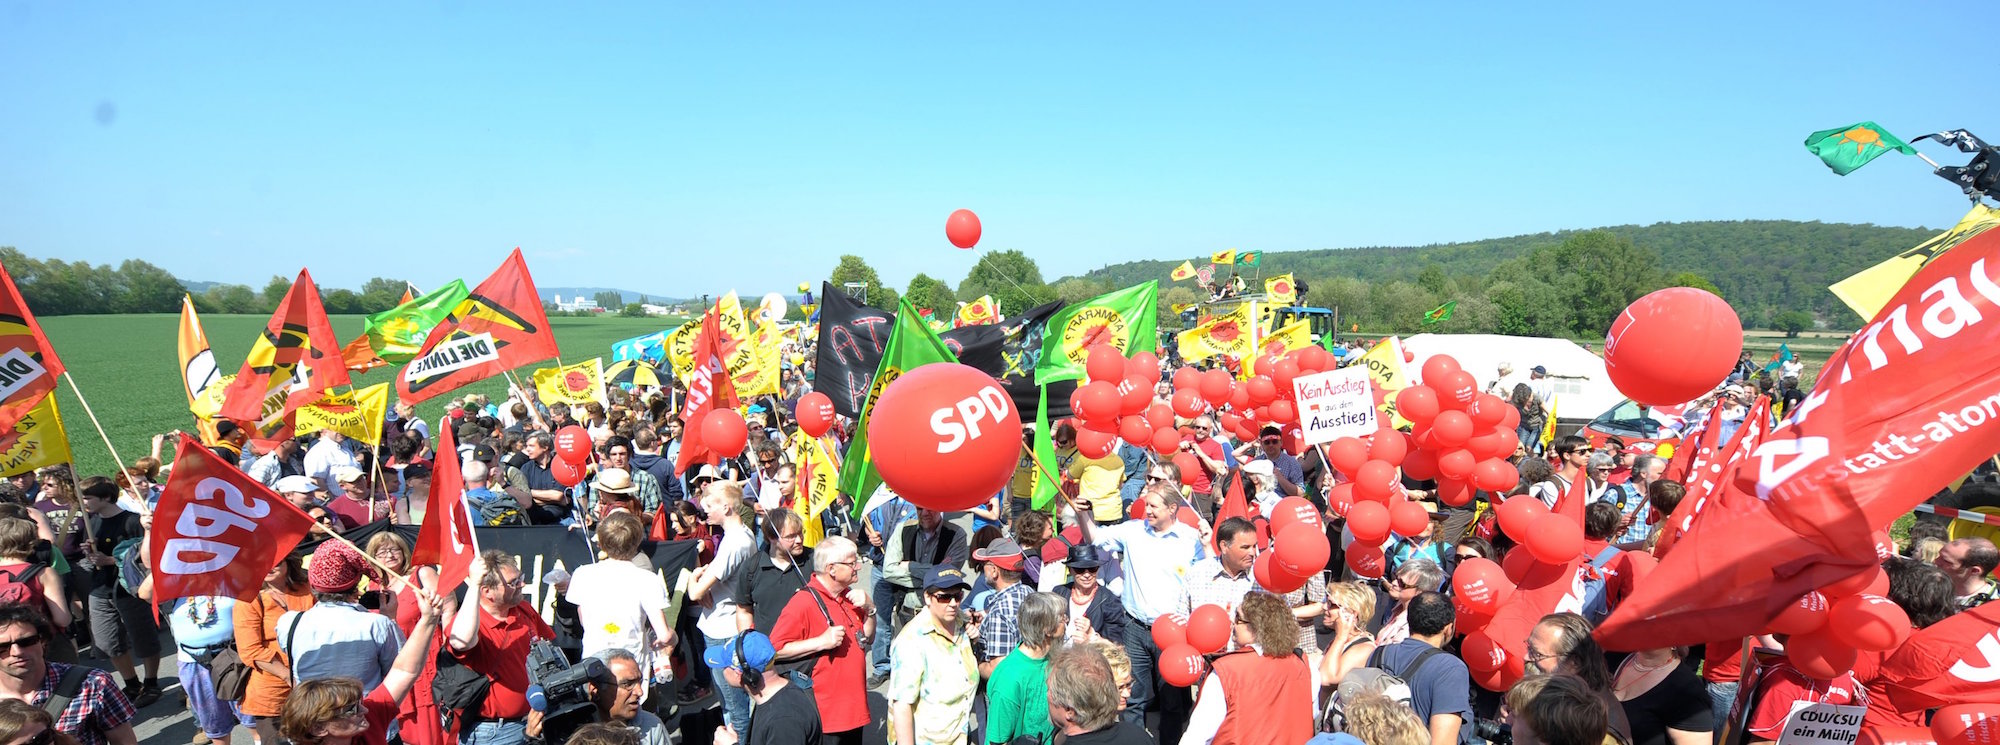 Foto: Tausende bei Anti-Atomprotesten im April 2011 vor dem Atomkraftwerk in Grohnde nahe Hameln.